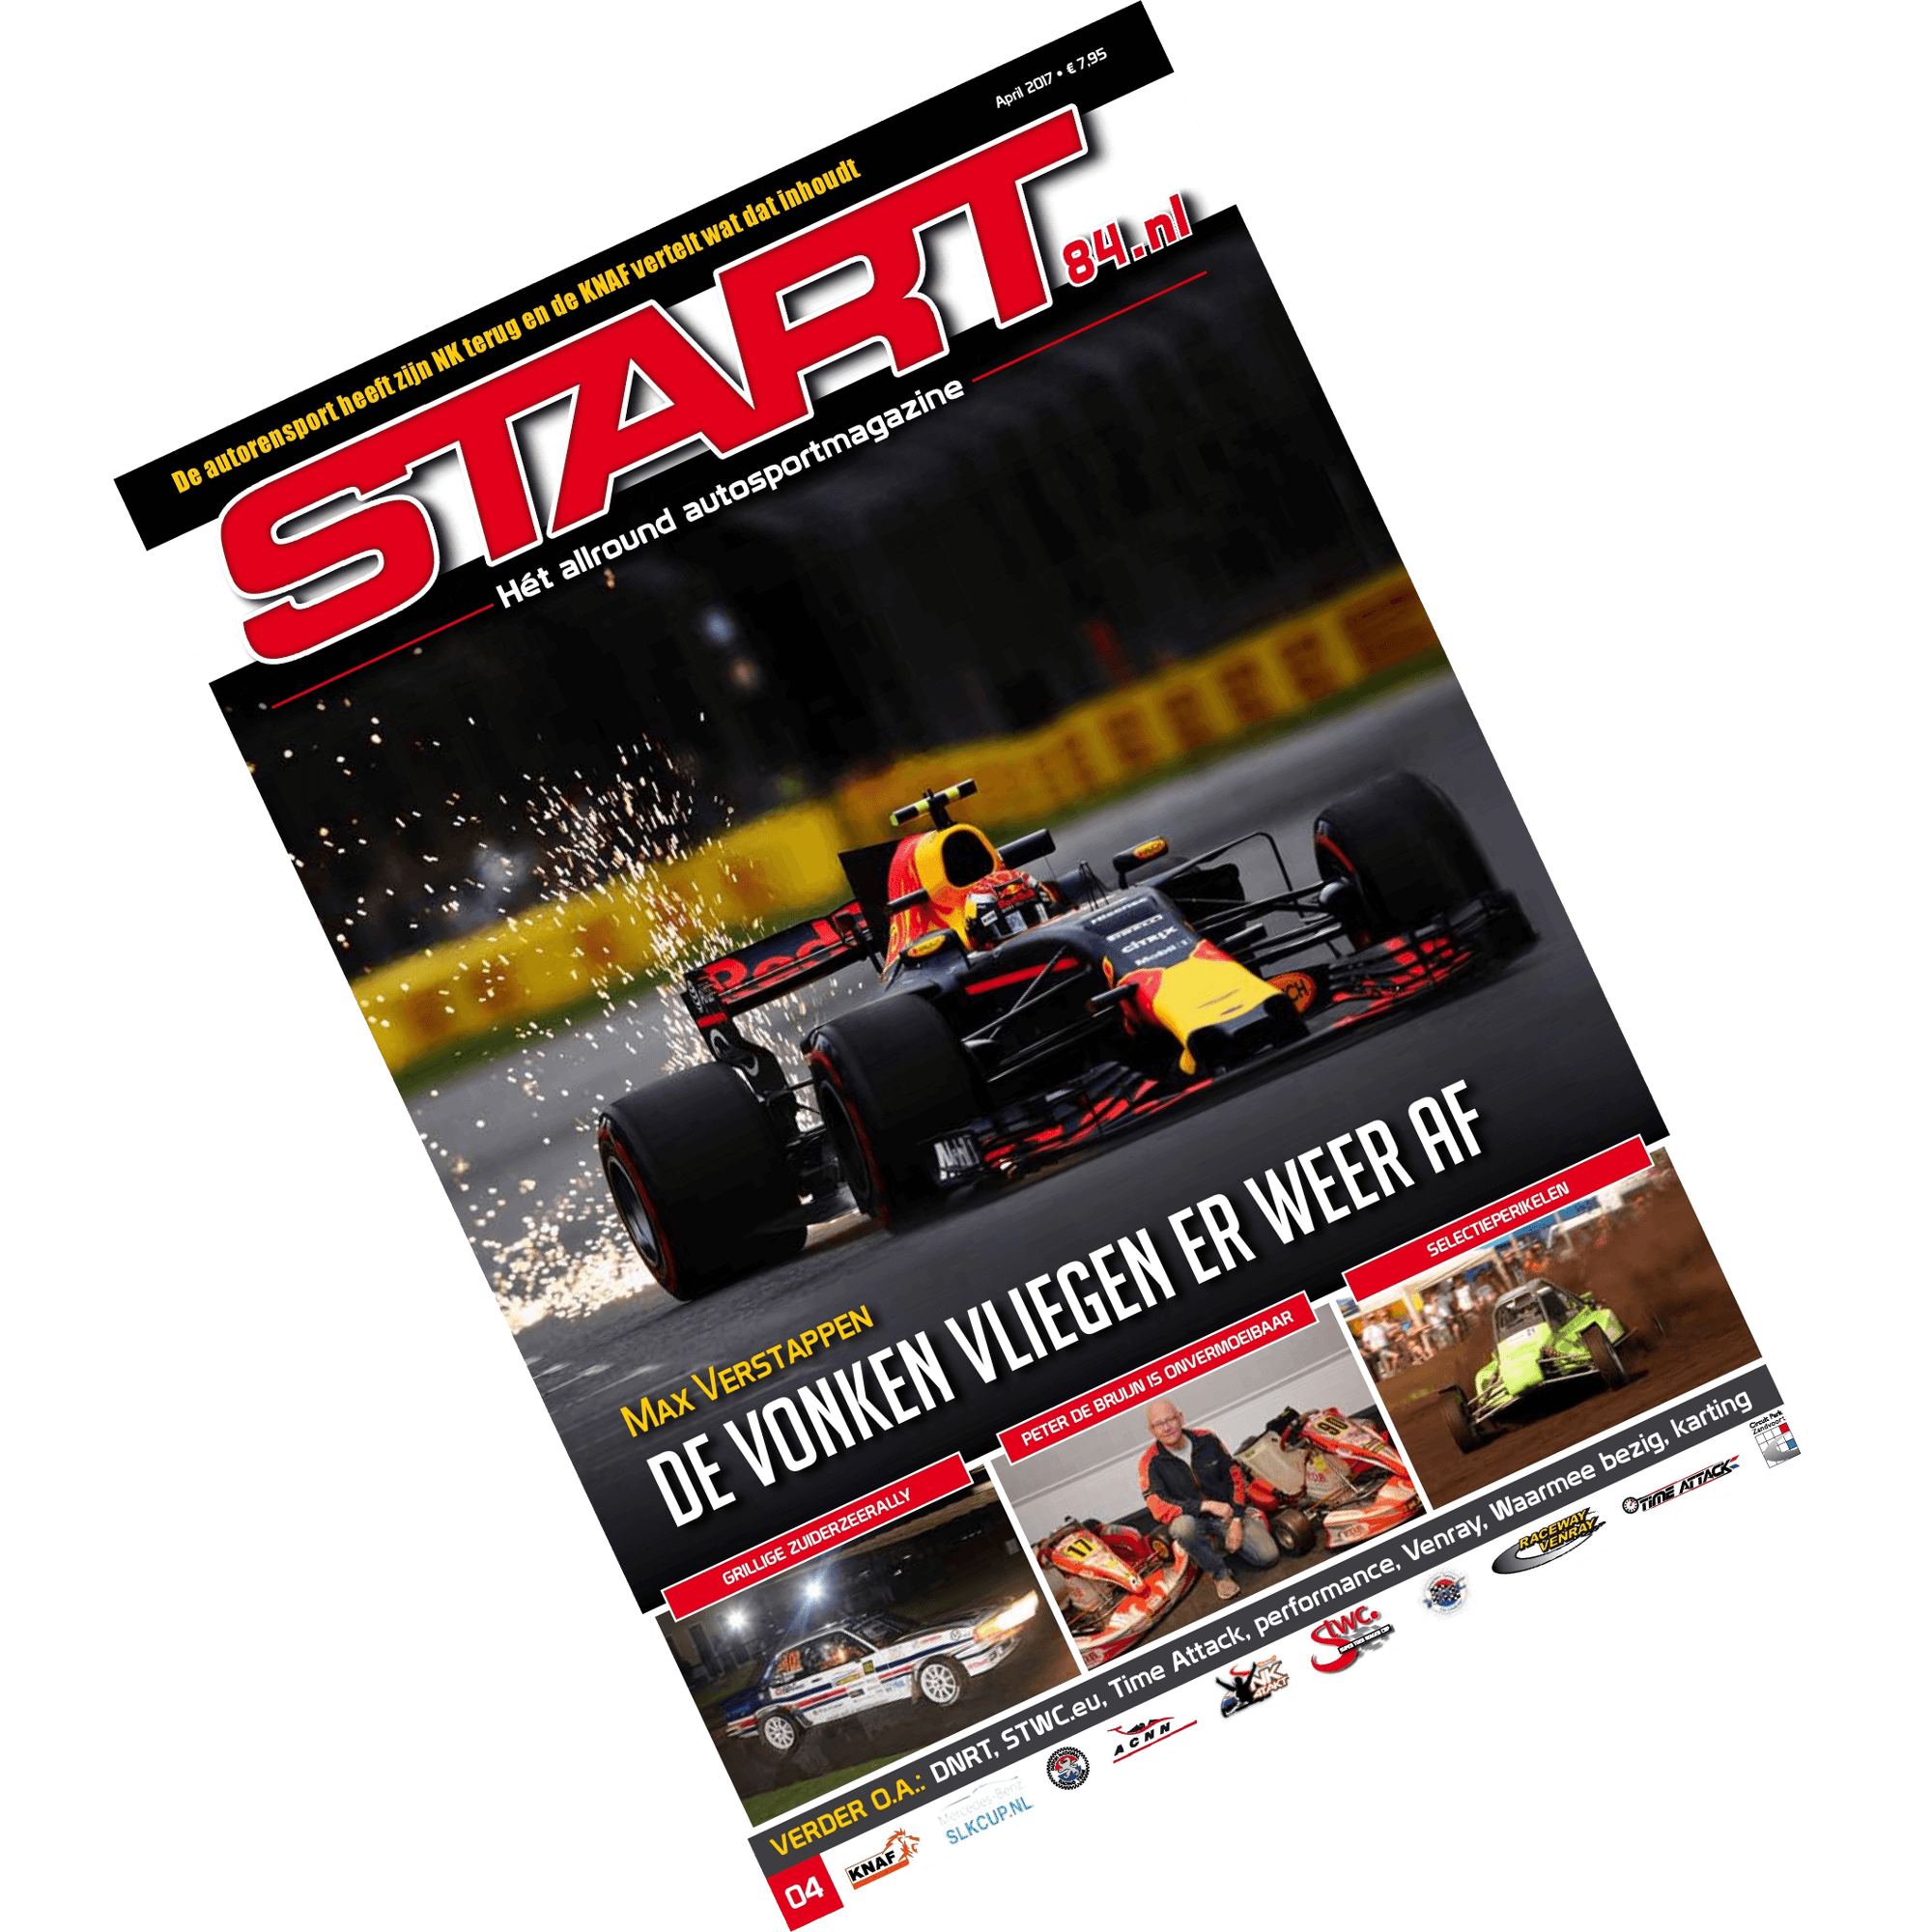 cover van START 84 autosportmagazine april 2017 met een interview met Max Verstappen en Bas van Bodegraven van GOMAX vlaggen